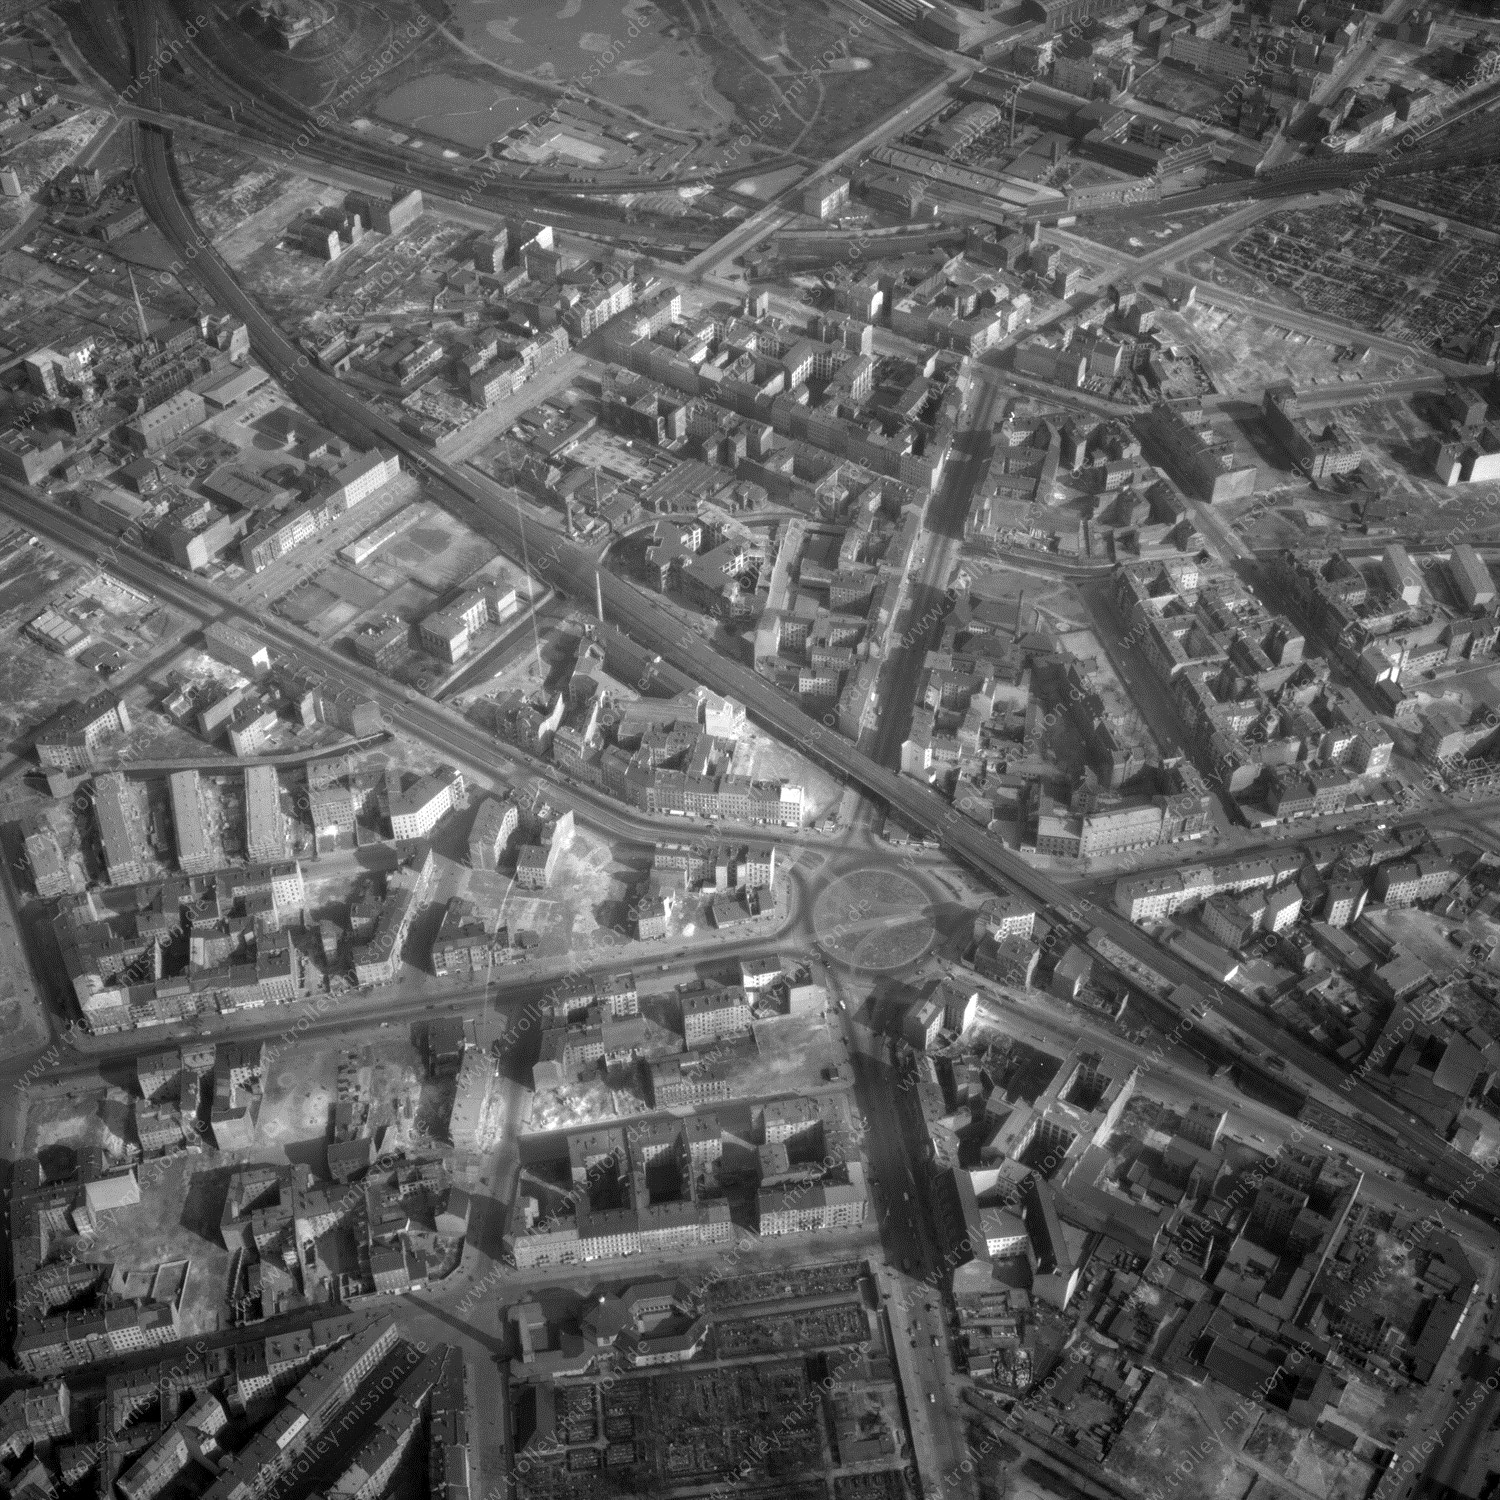 Alte Fotos und Luftbilder von Berlin - Luftbildaufnahme Nr. 06 - Historische Luftaufnahmen von West-Berlin aus dem Jahr 1954 - Flugstrecke Quebec